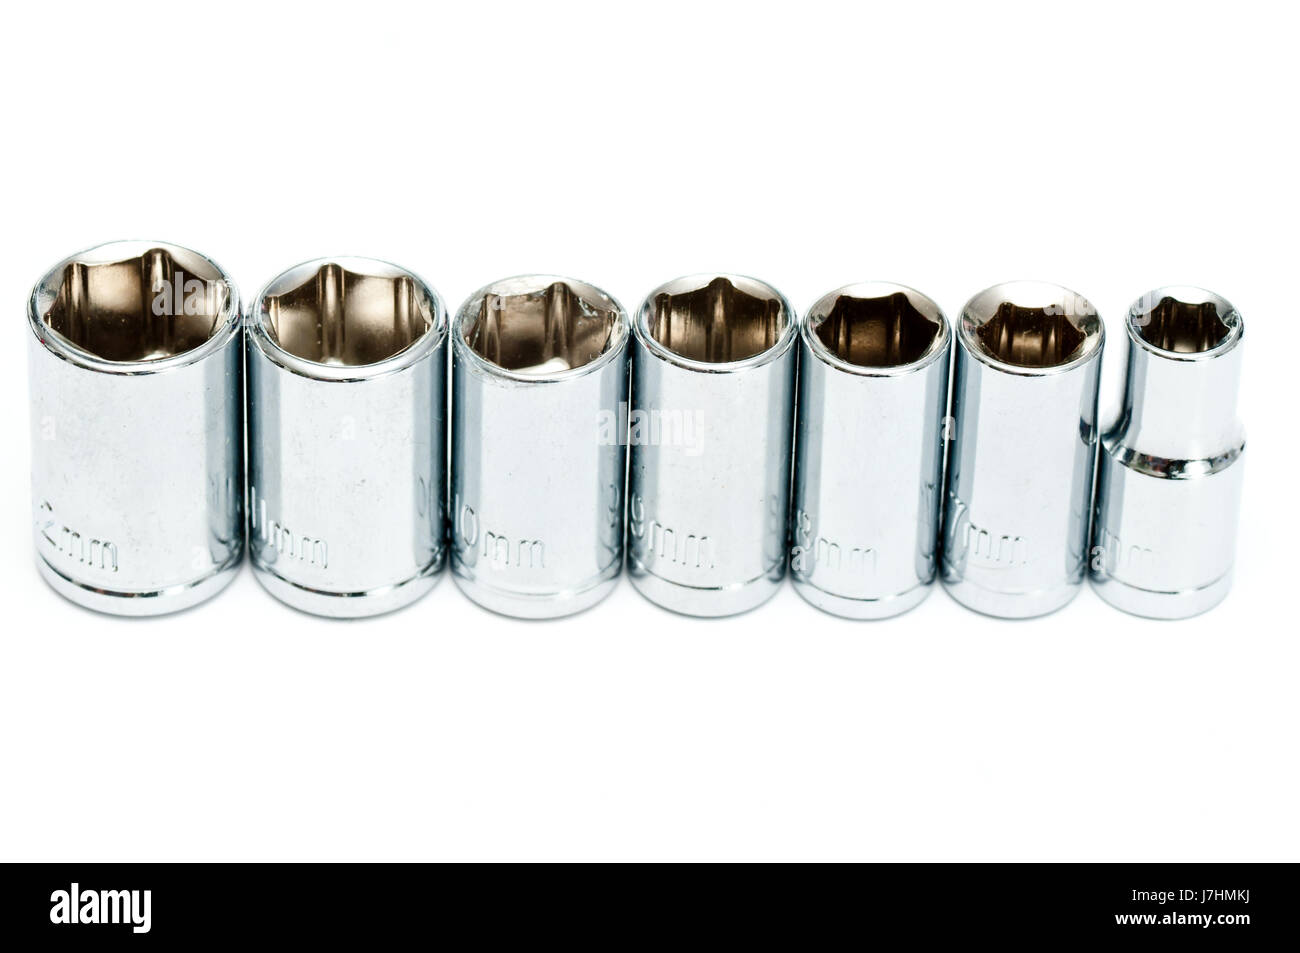 Teste accessori Accessori attrezzo cacciavite argento vite di ferro teste metalliche Foto Stock